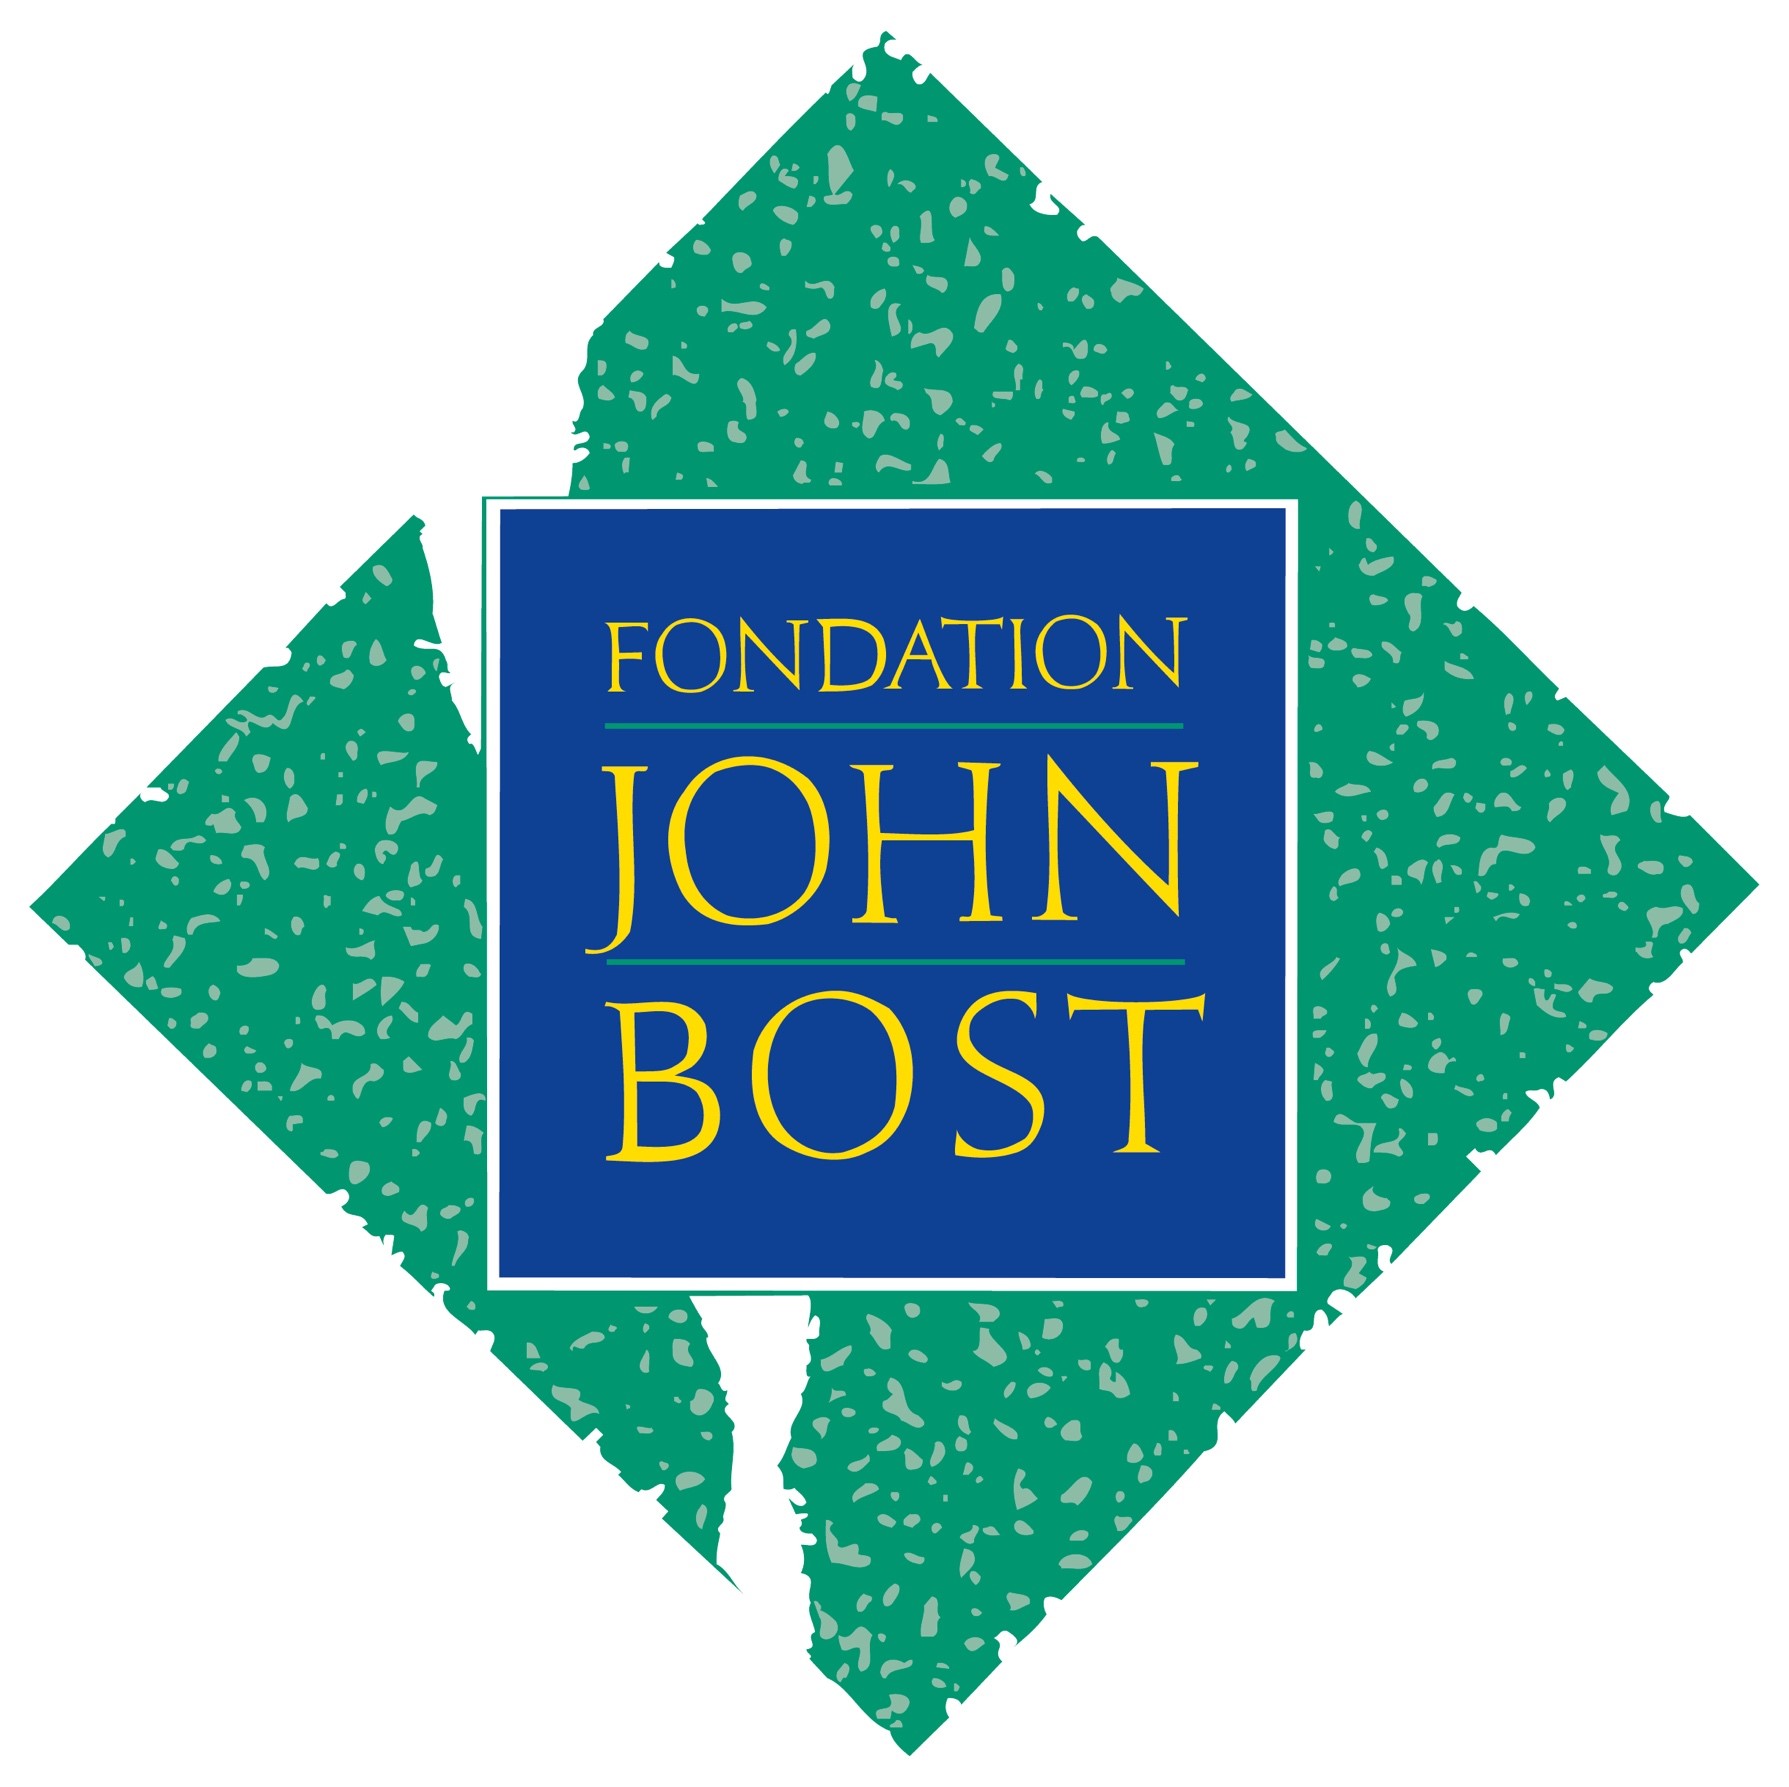 Fondation John Bost - www.johnbost.org (nouvelle fenêtre)